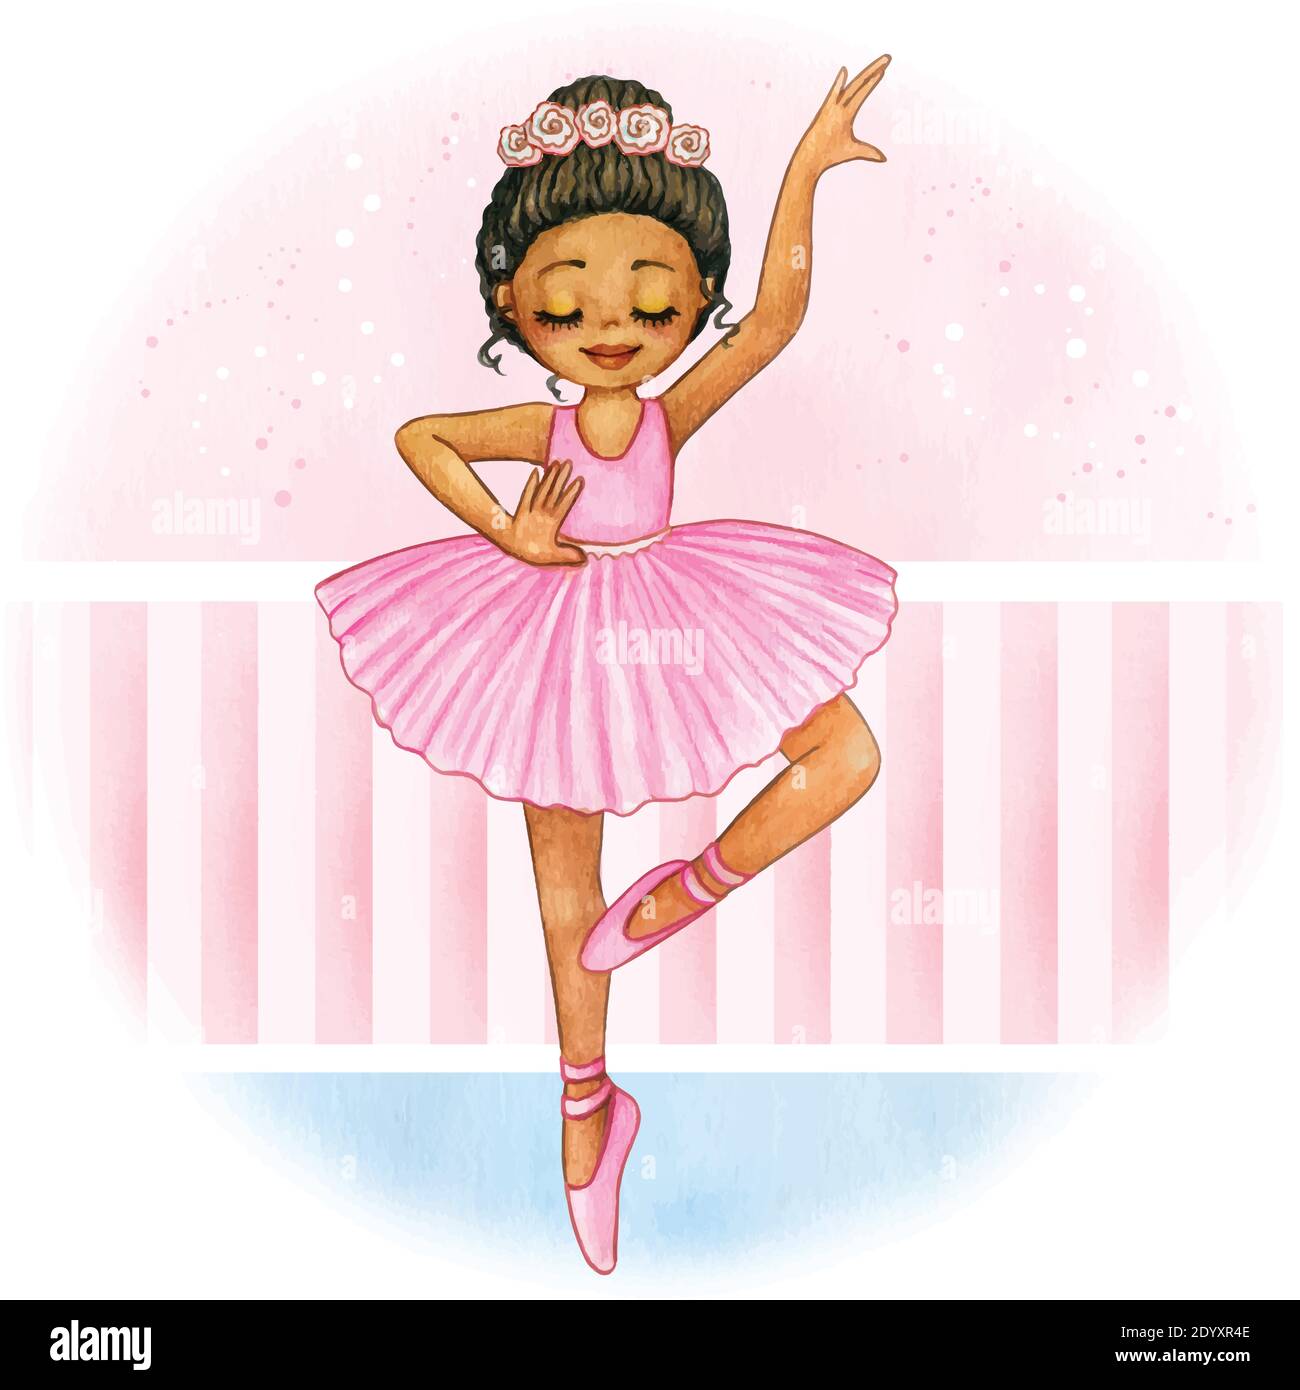 Ballerine tutu enfant Banque d'images vectorielles - Page 2 - Alamy